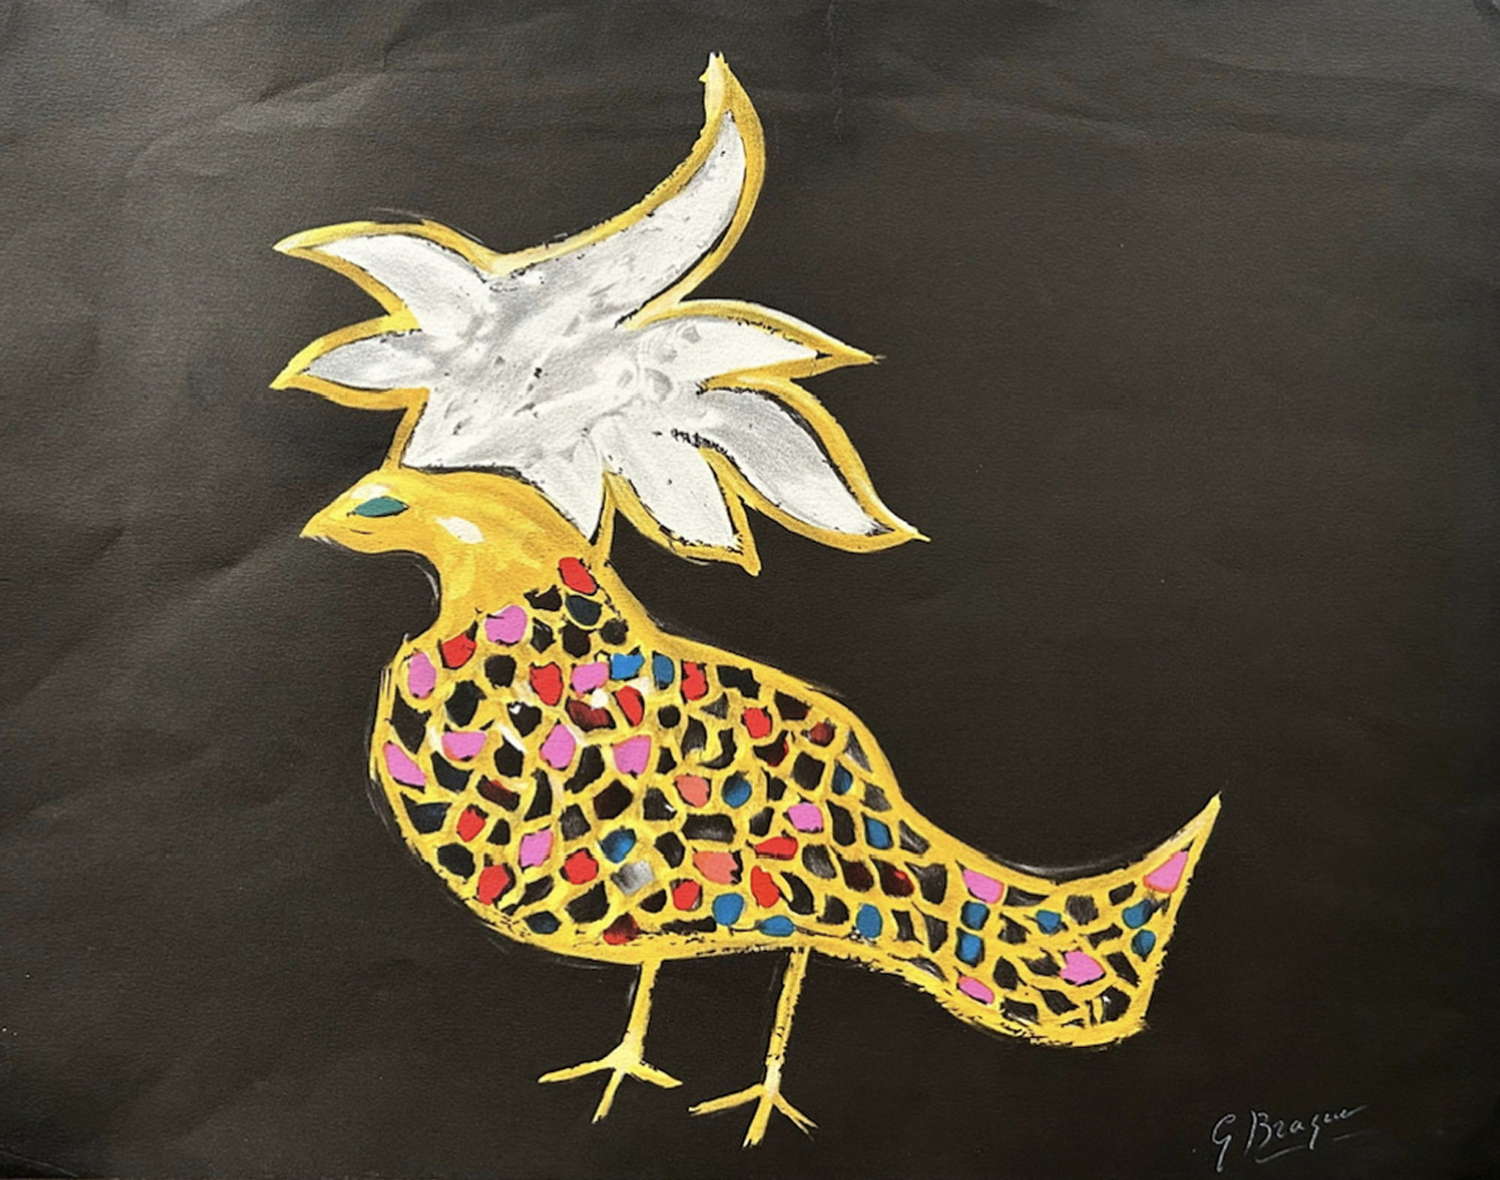 Colour lithograph Phoenix after a gouache by George Braque